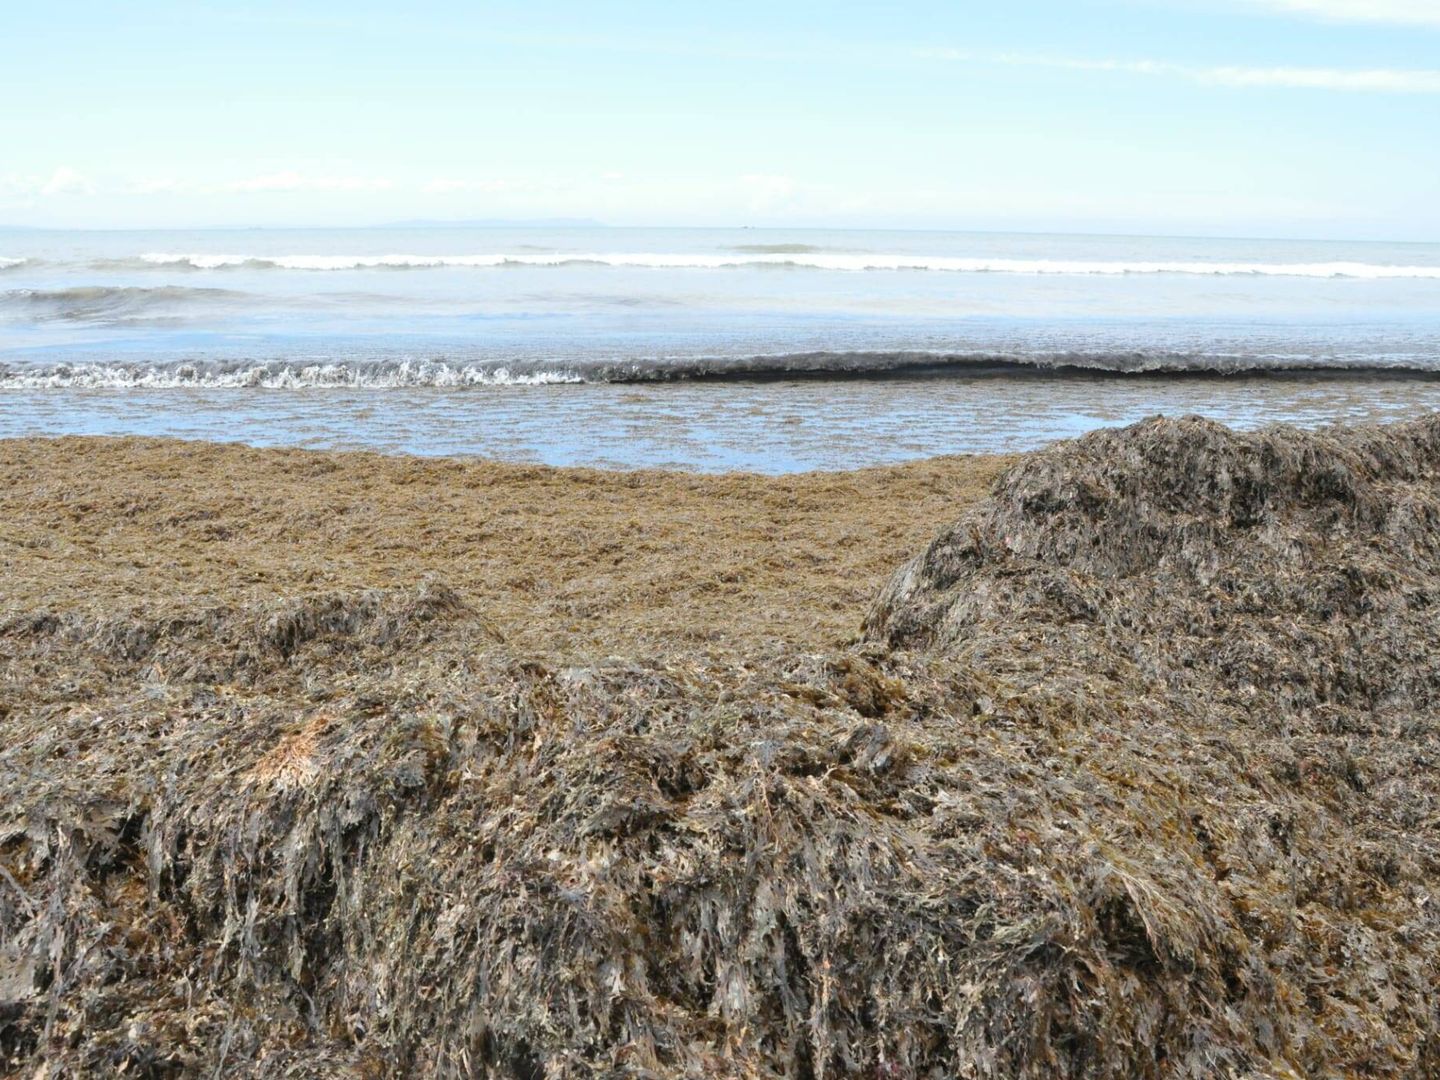 Arribazones formados por el alga invasora en una playa de Tarifa. (Cedida)